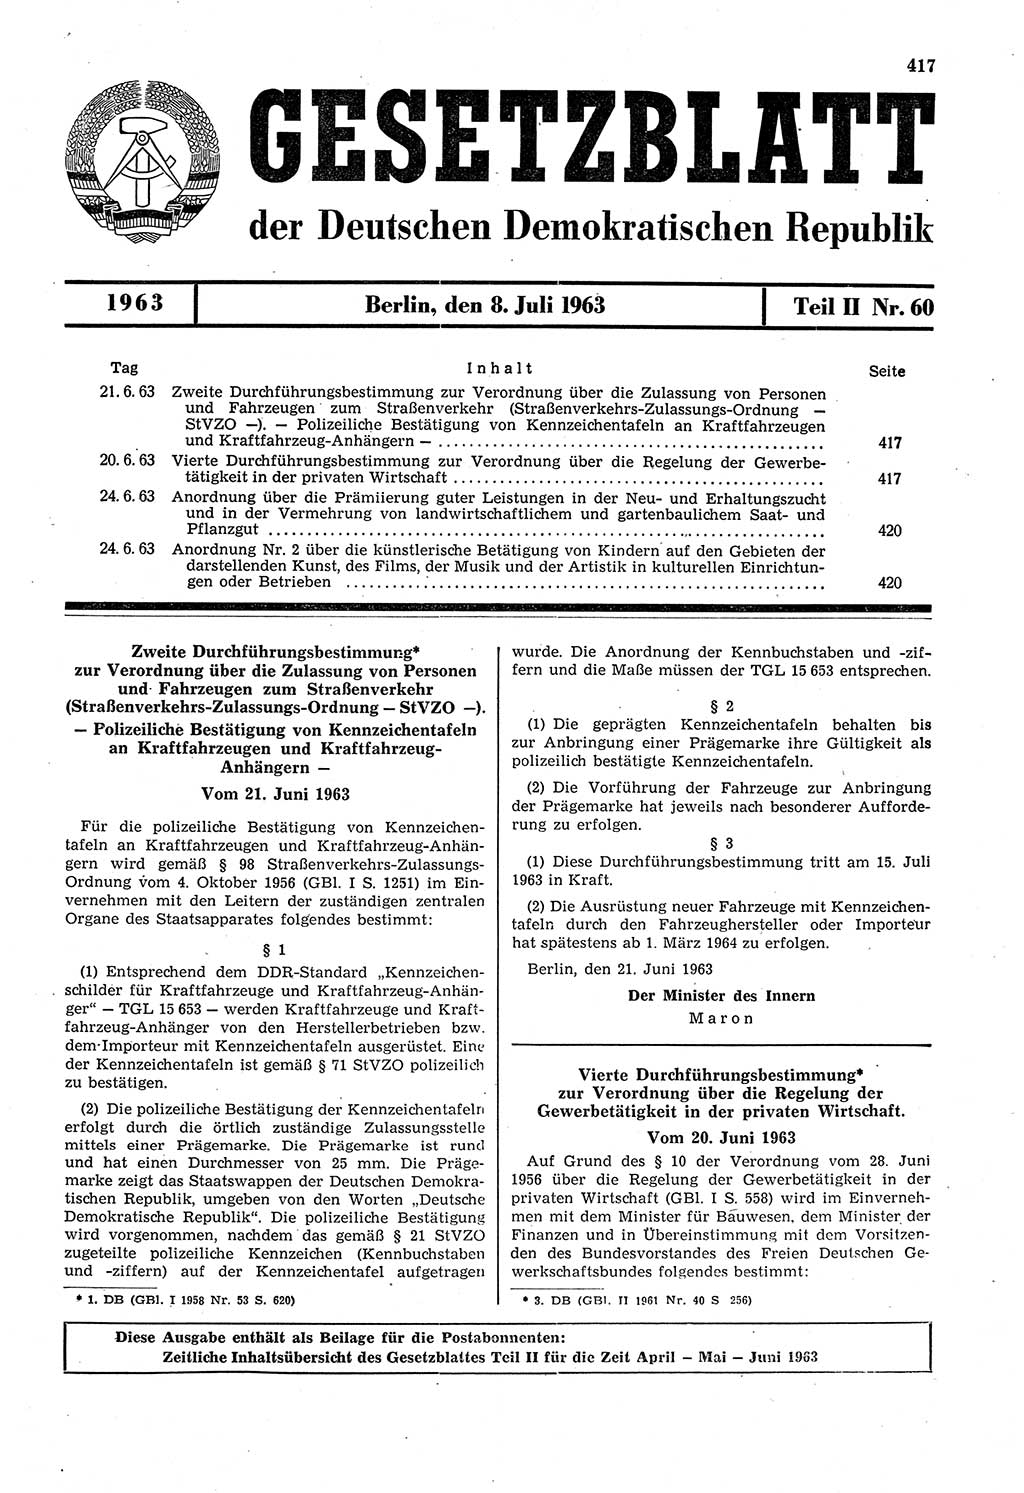 Gesetzblatt (GBl.) der Deutschen Demokratischen Republik (DDR) Teil ⅠⅠ 1963, Seite 417 (GBl. DDR ⅠⅠ 1963, S. 417)